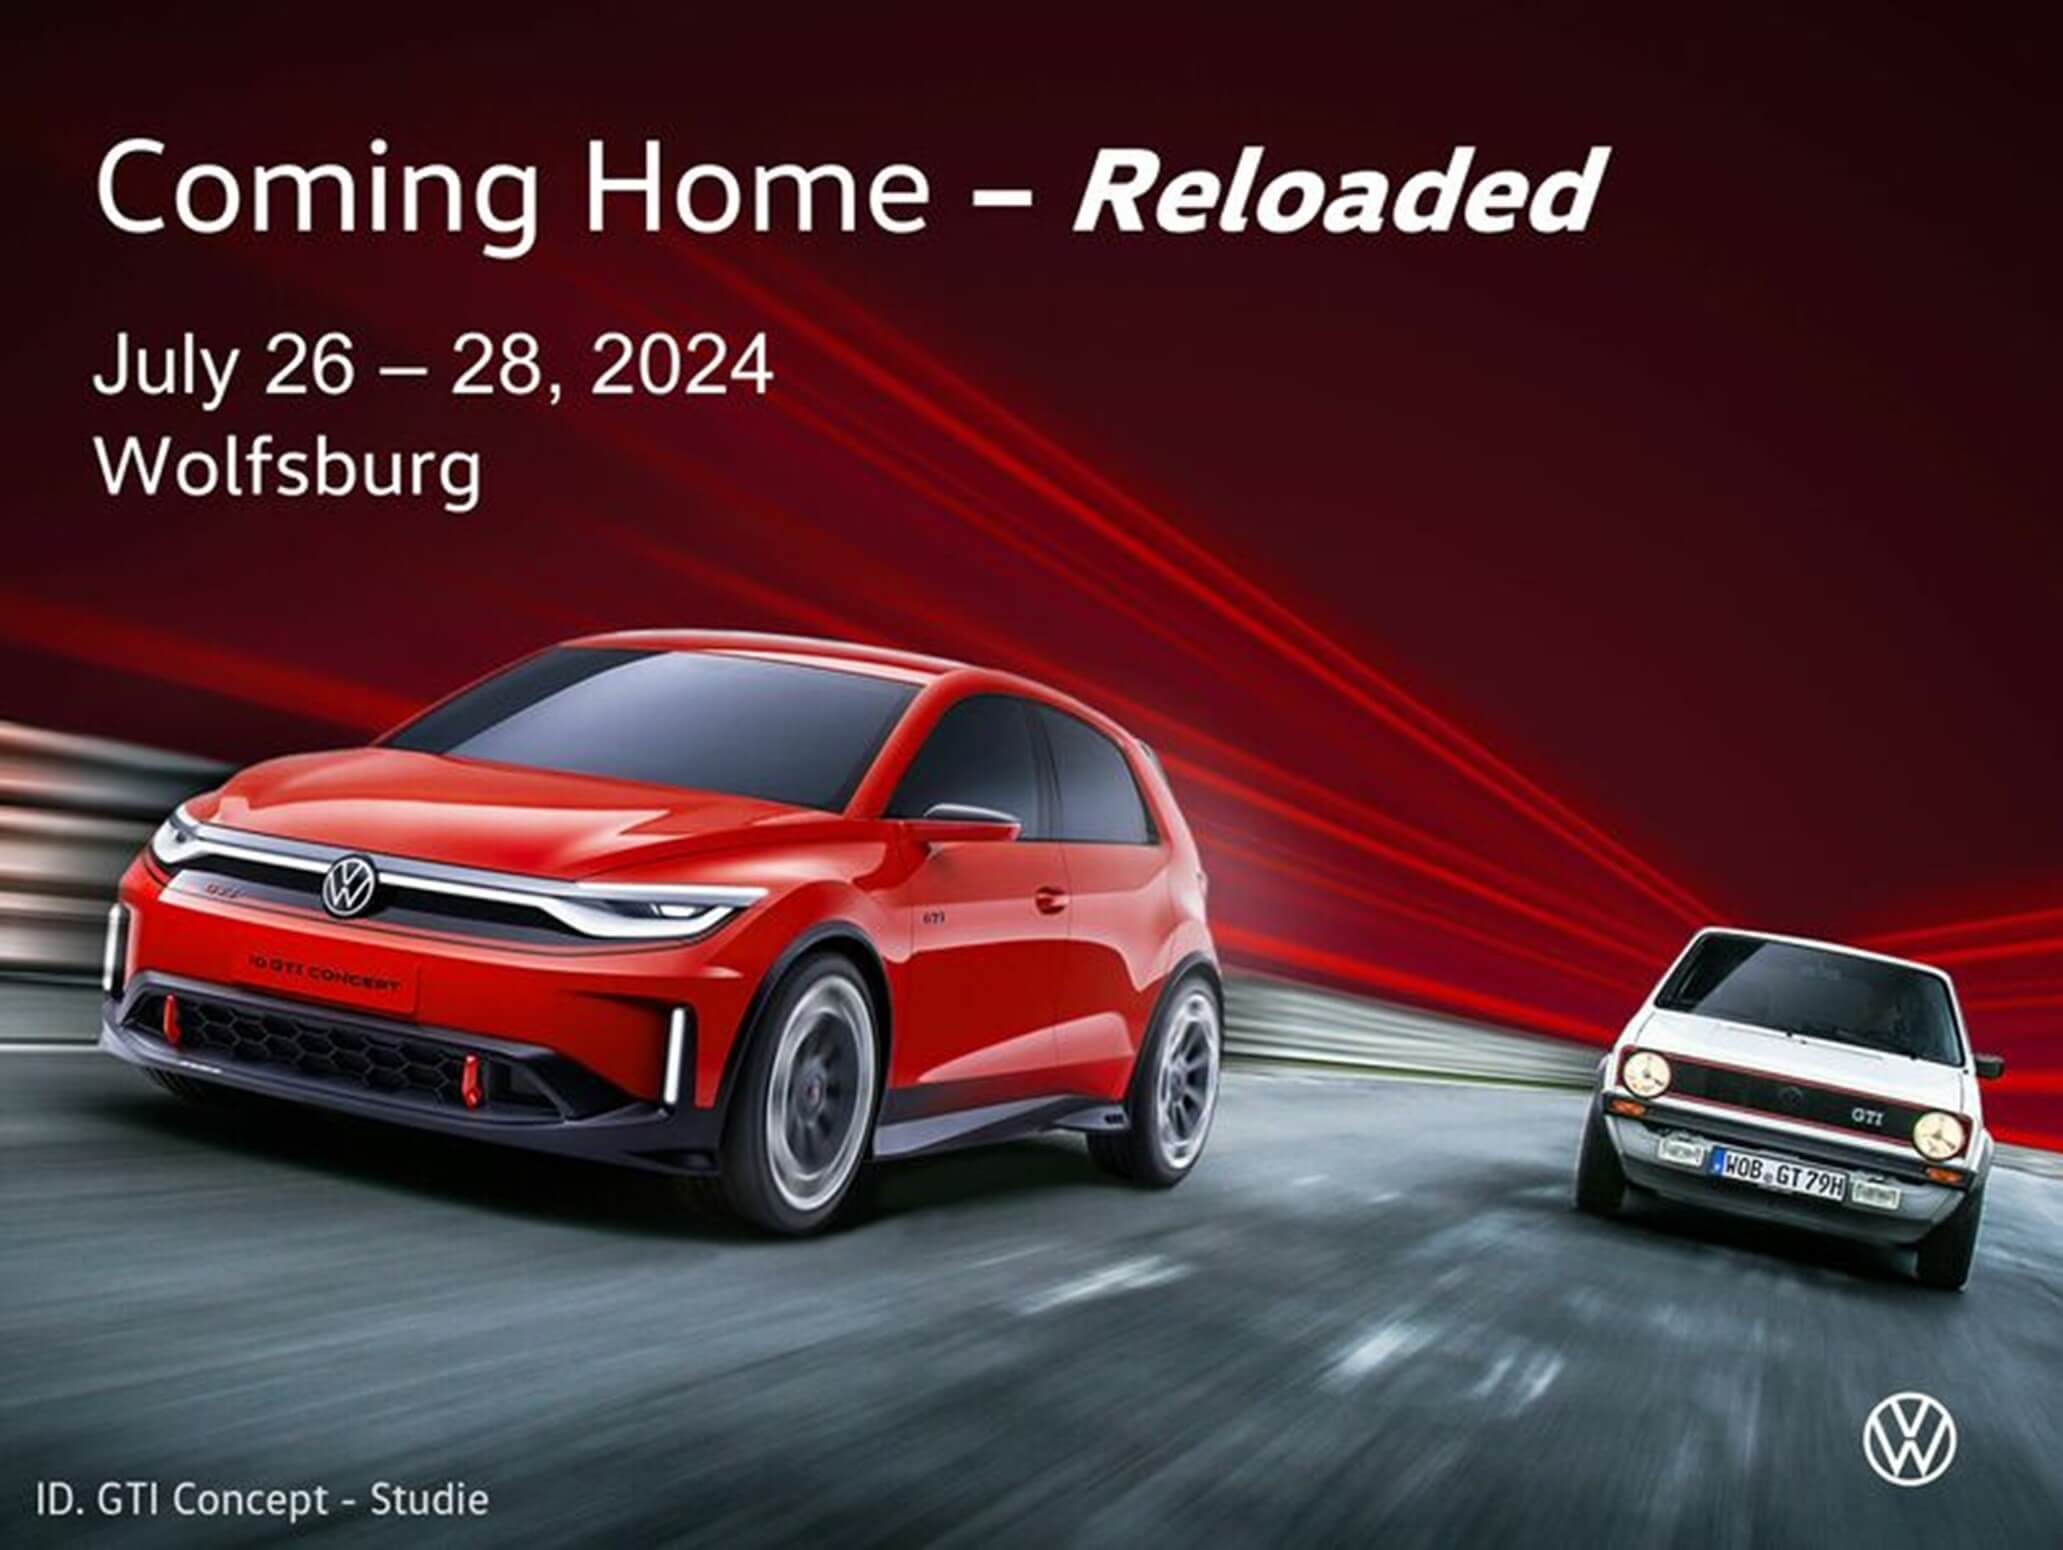 Volkswagen GTI
Coming Home - Reloaded